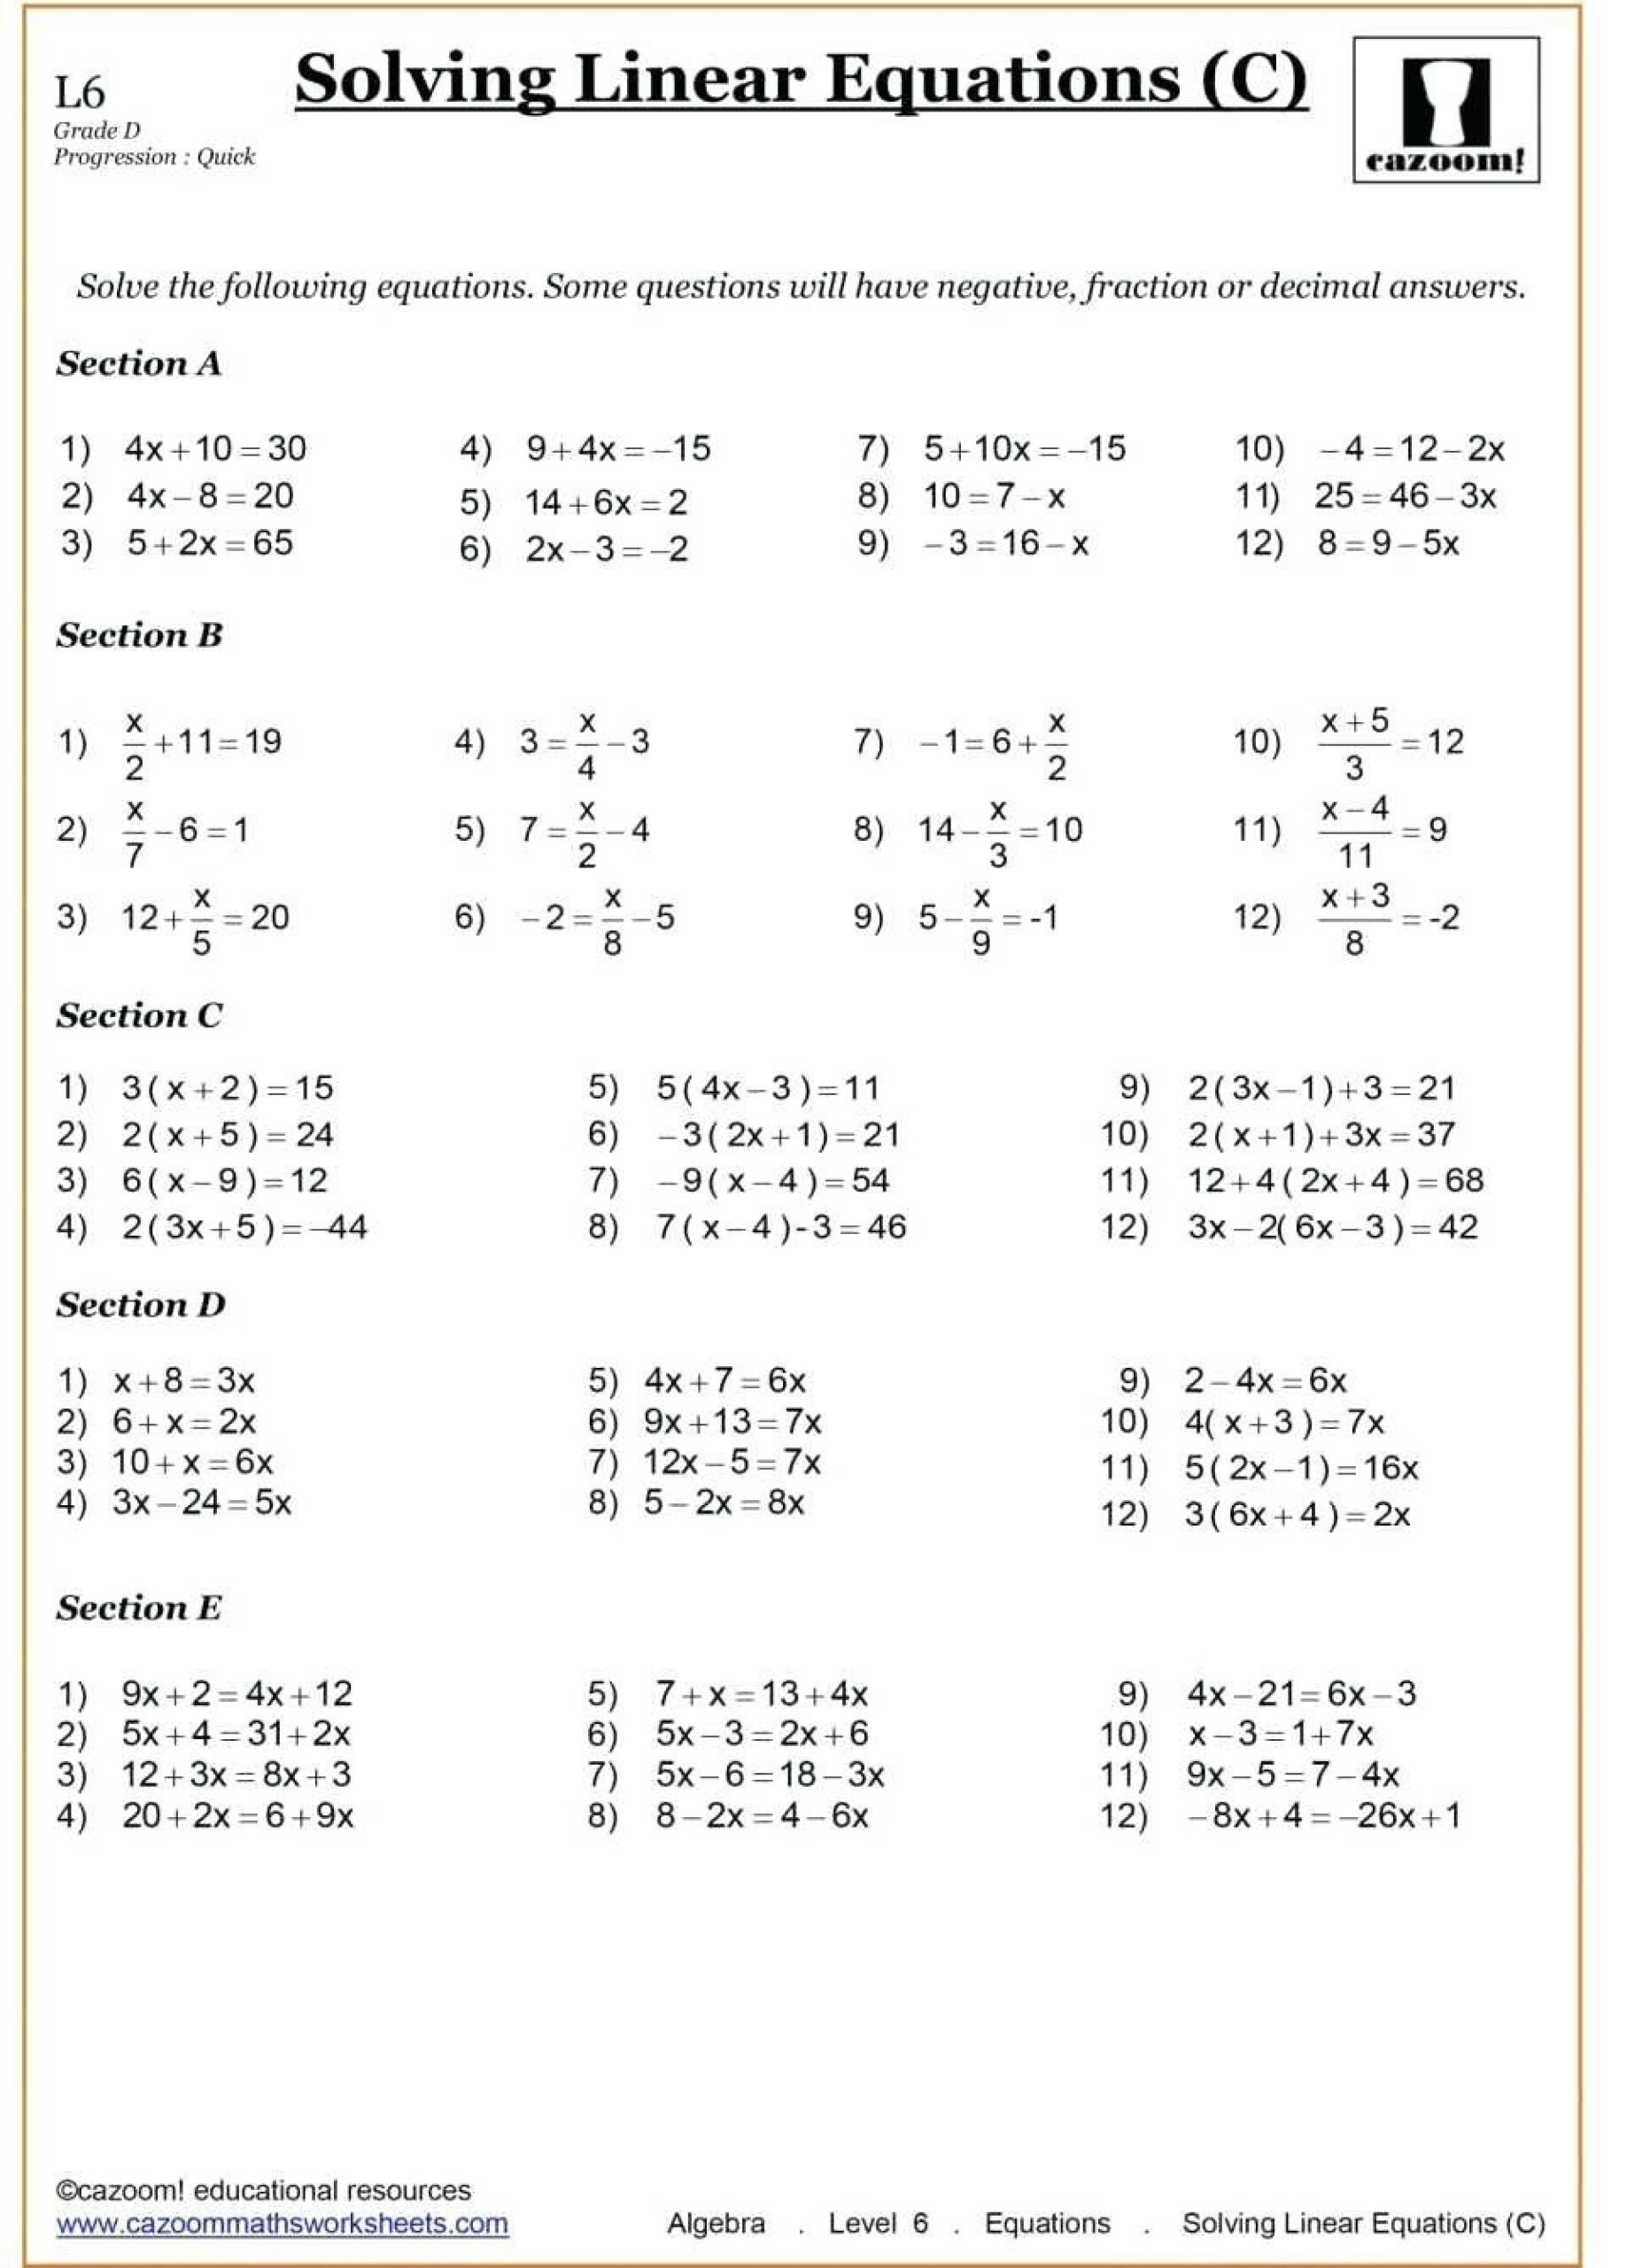 9Th Grade Algebra Worksheets 10th Grade Math Worksheets Solving Linear Equations 10th Grade Math - 9th Grade Algebra Worksheets Free Printable